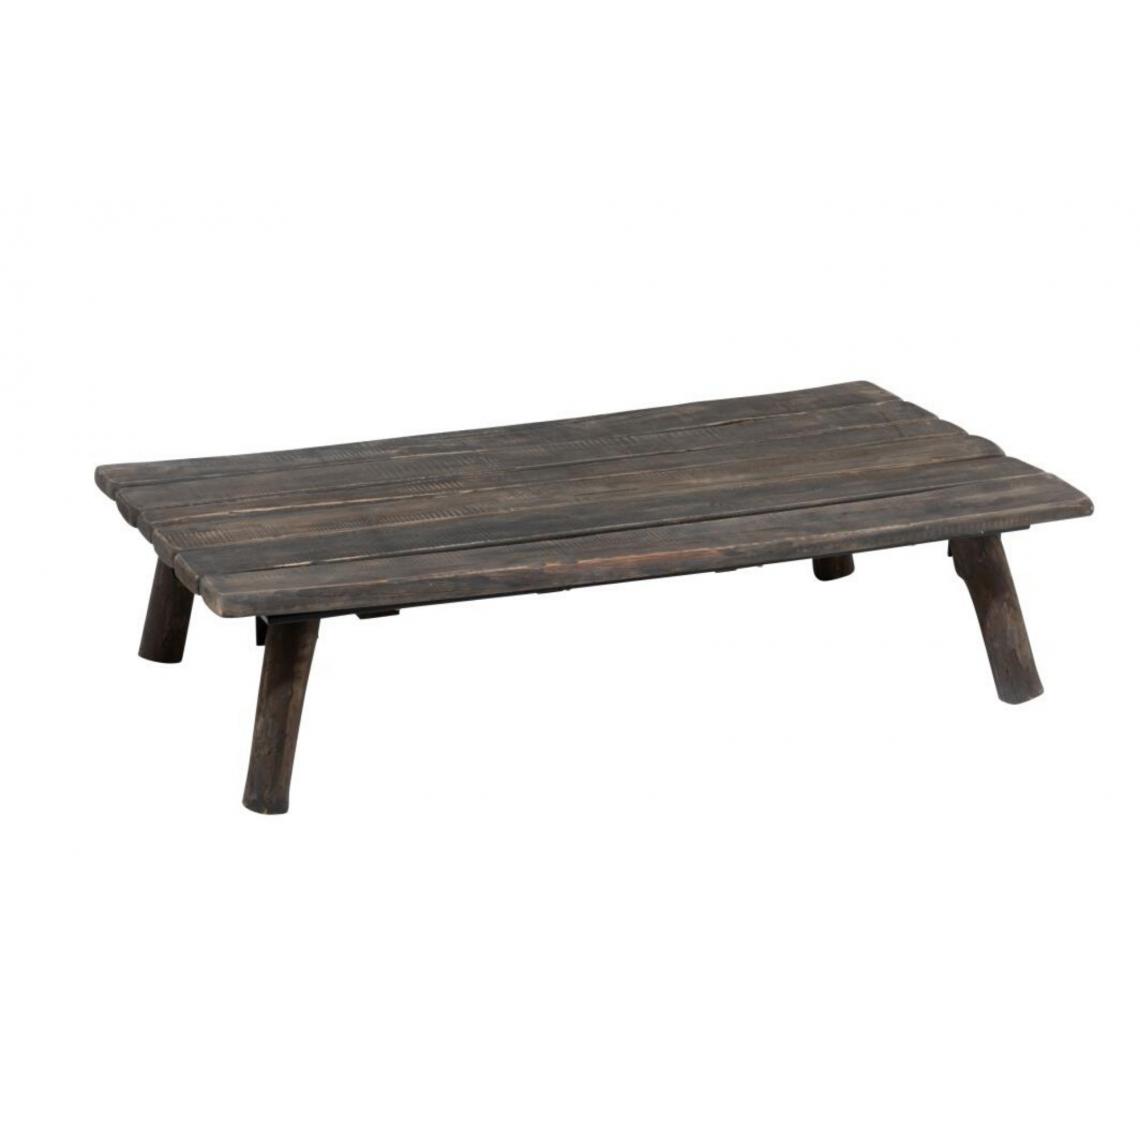 HELLIN - Table basse rectangulaire en chêne brut - DUVAL - Tables à manger